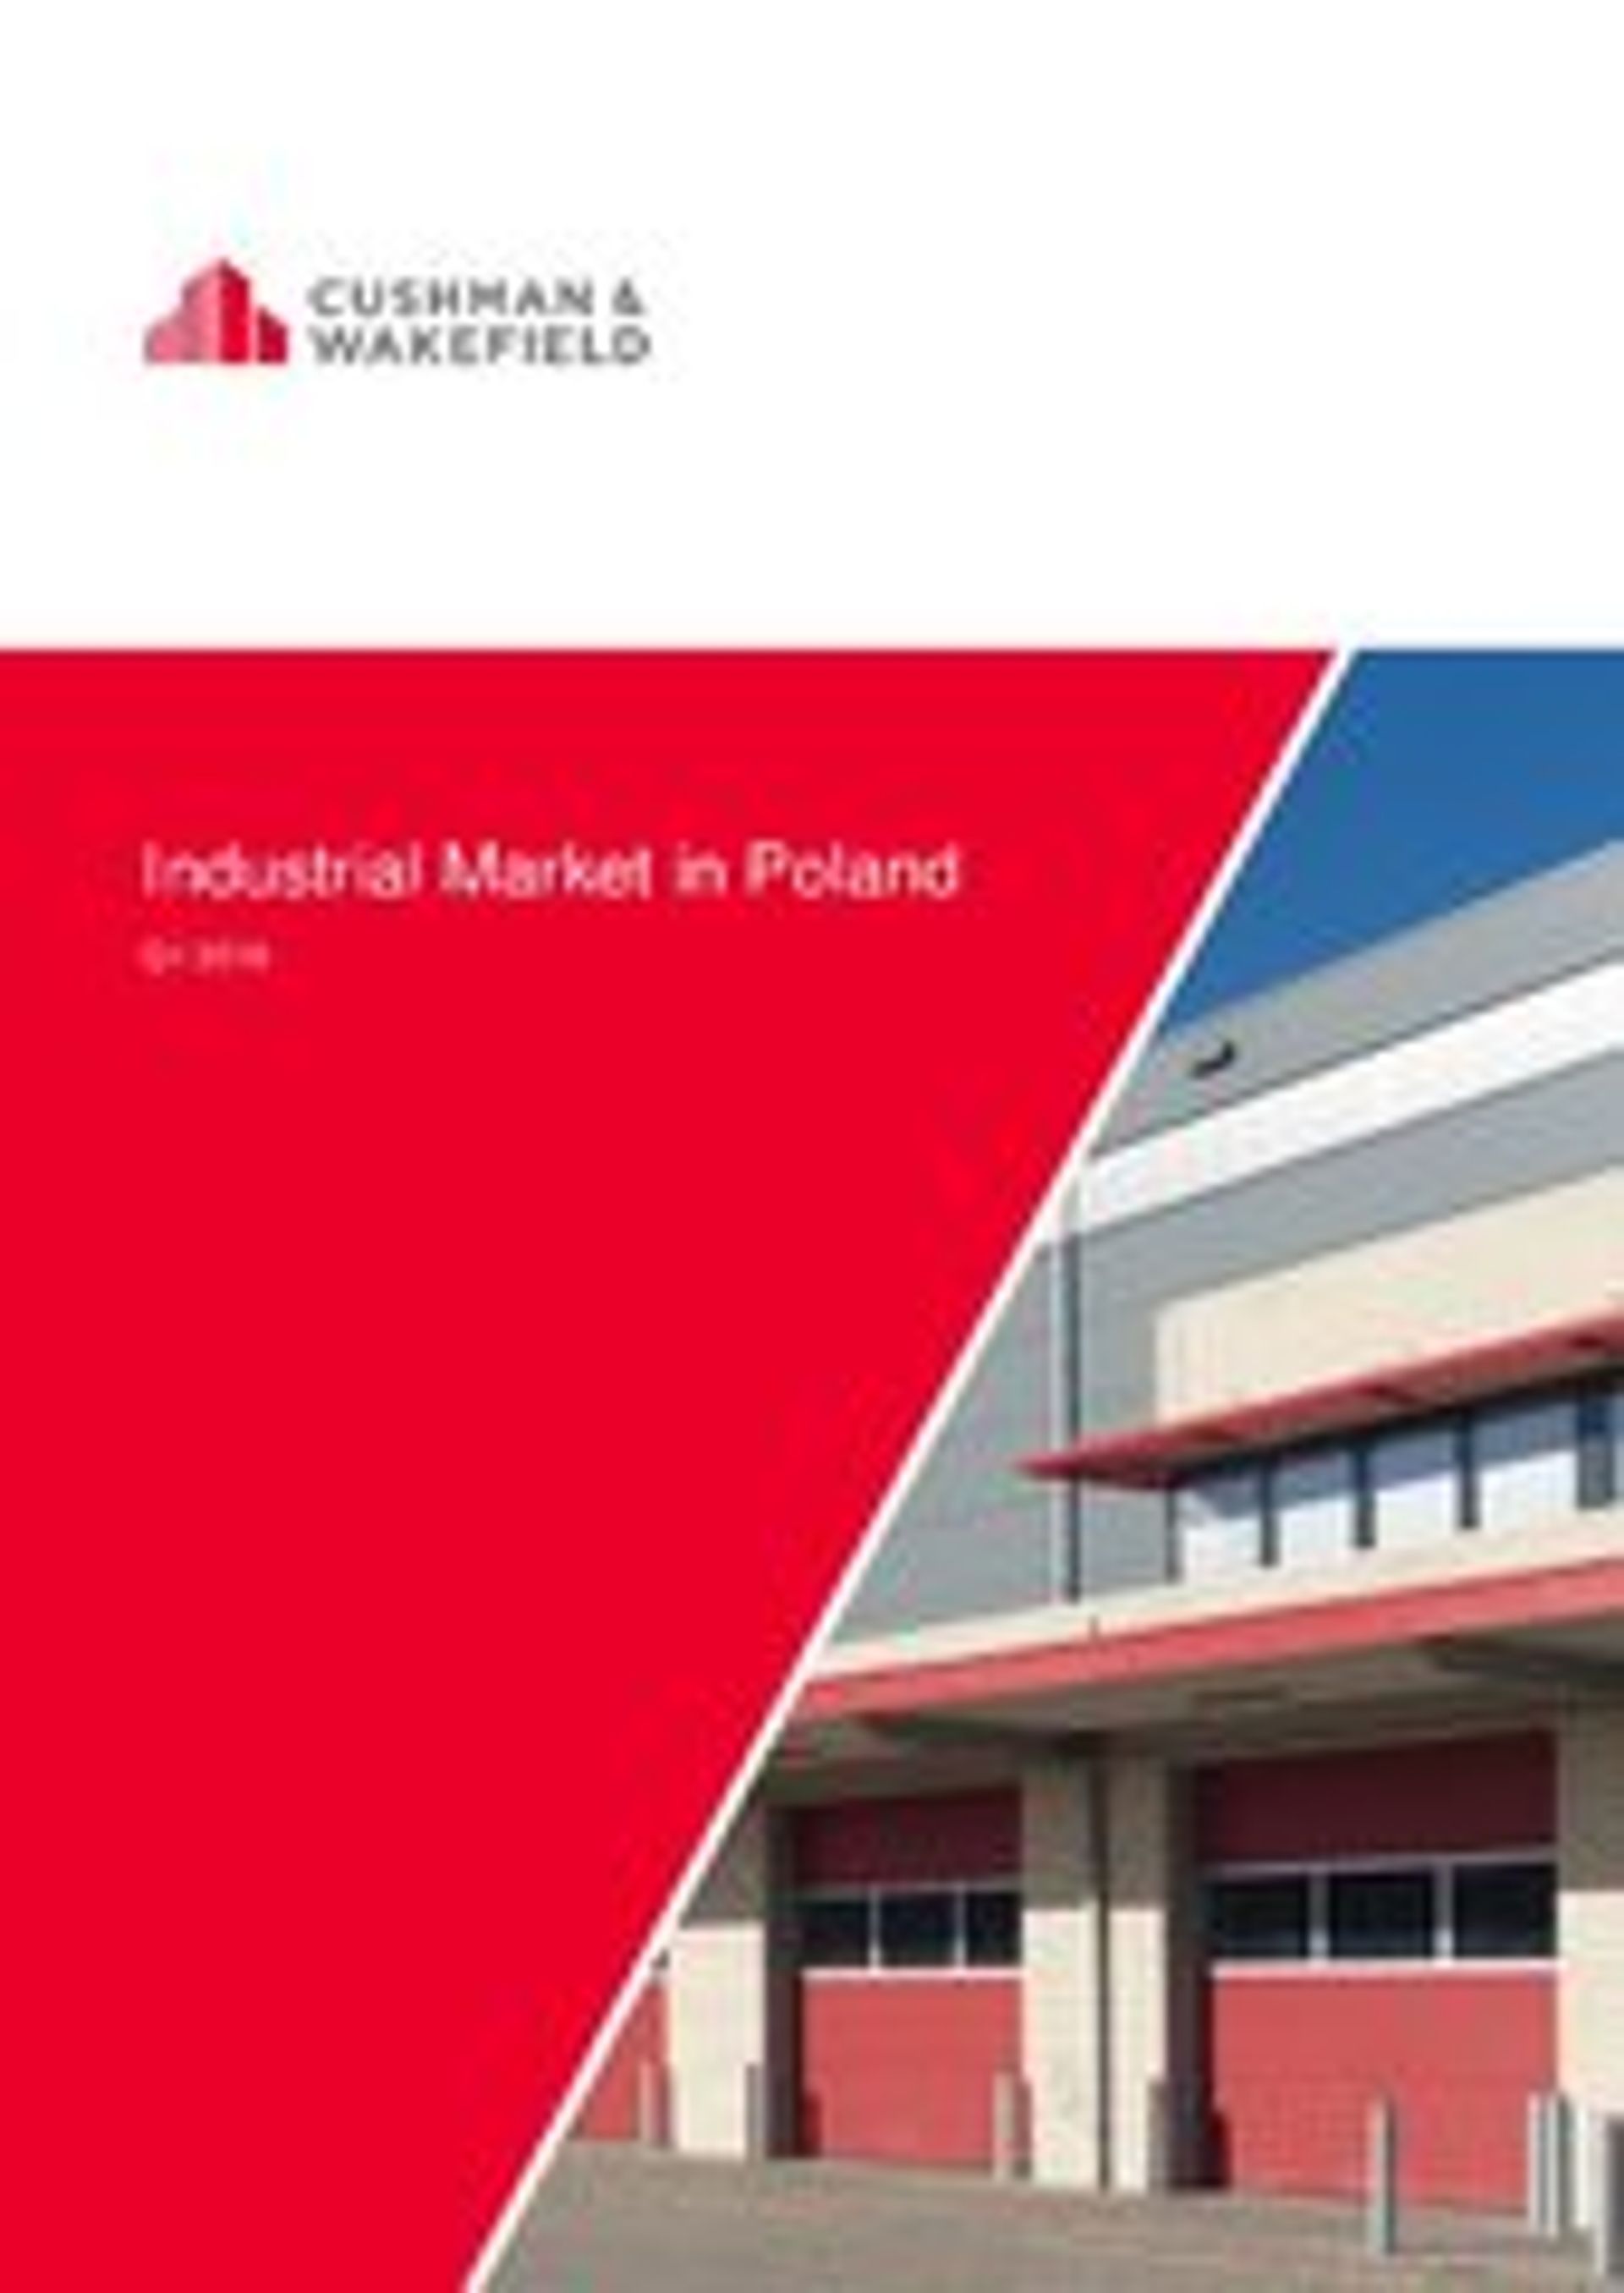  Dobra sytuacja na polskim rynku nieruchomości magazynowych – utrzymuje się wysoki popyt na powierzchnie przemysłowe i logistyczne